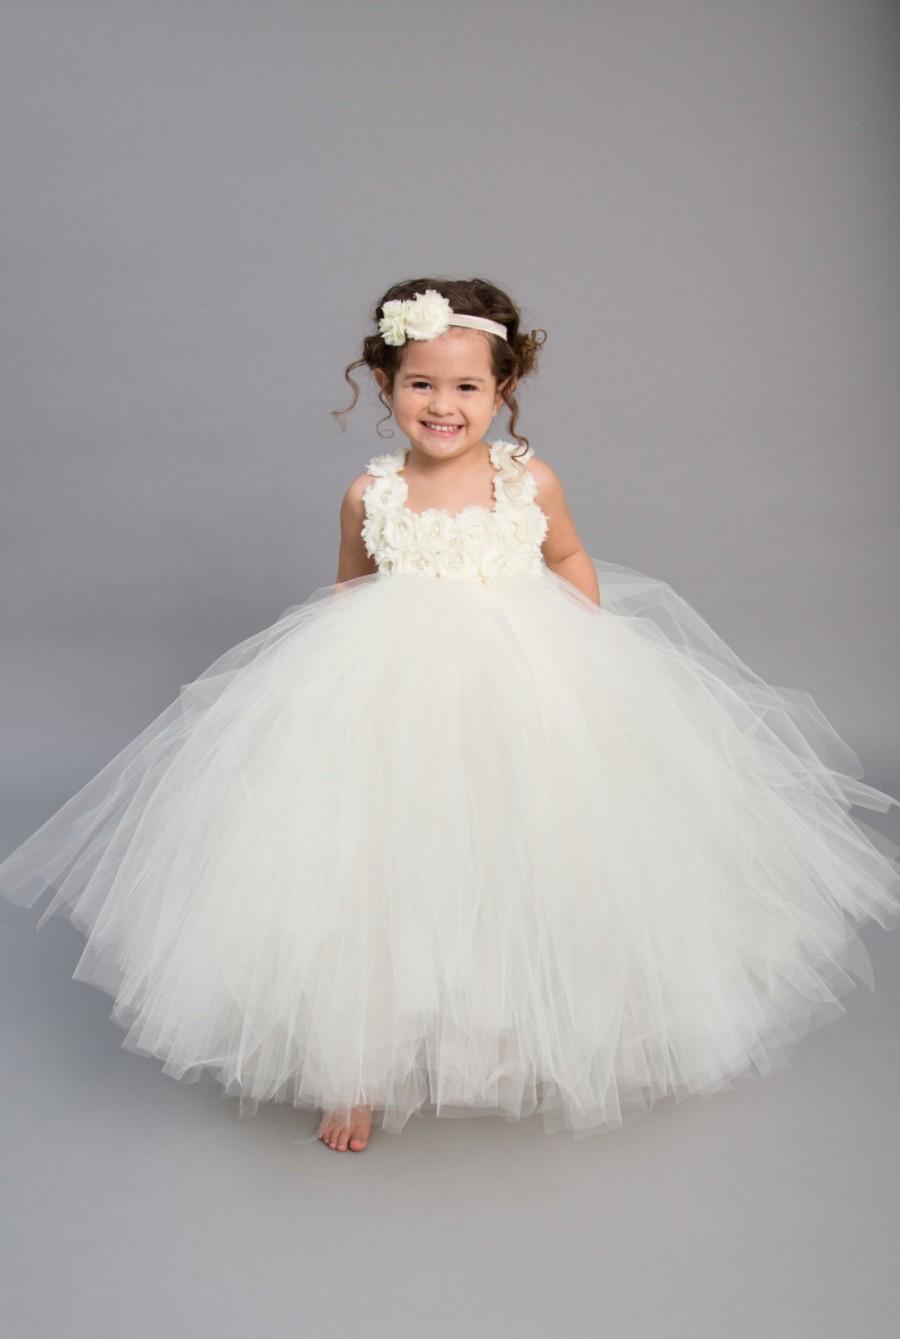 Wedding - Flower girl dress - Tulle flower girl dress - Ivory Flower Girl Dress - Tulle dress - Pageant dress - Princess dress - Ivory Dress